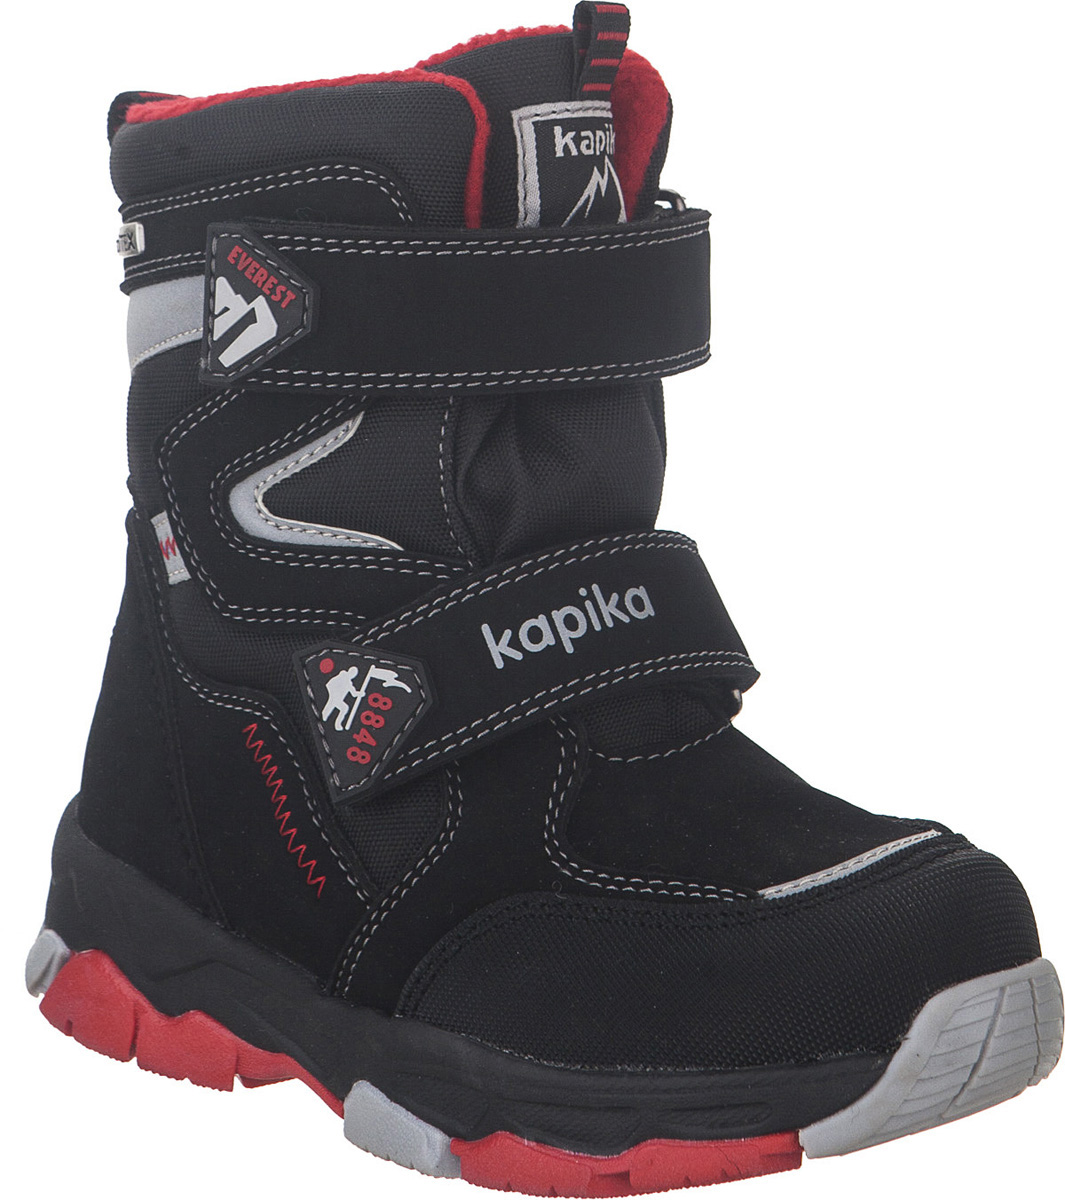 Ботинки для мальчика Kapika KapiTEX, цвет: черный, красный. 42220-1. Размер 28